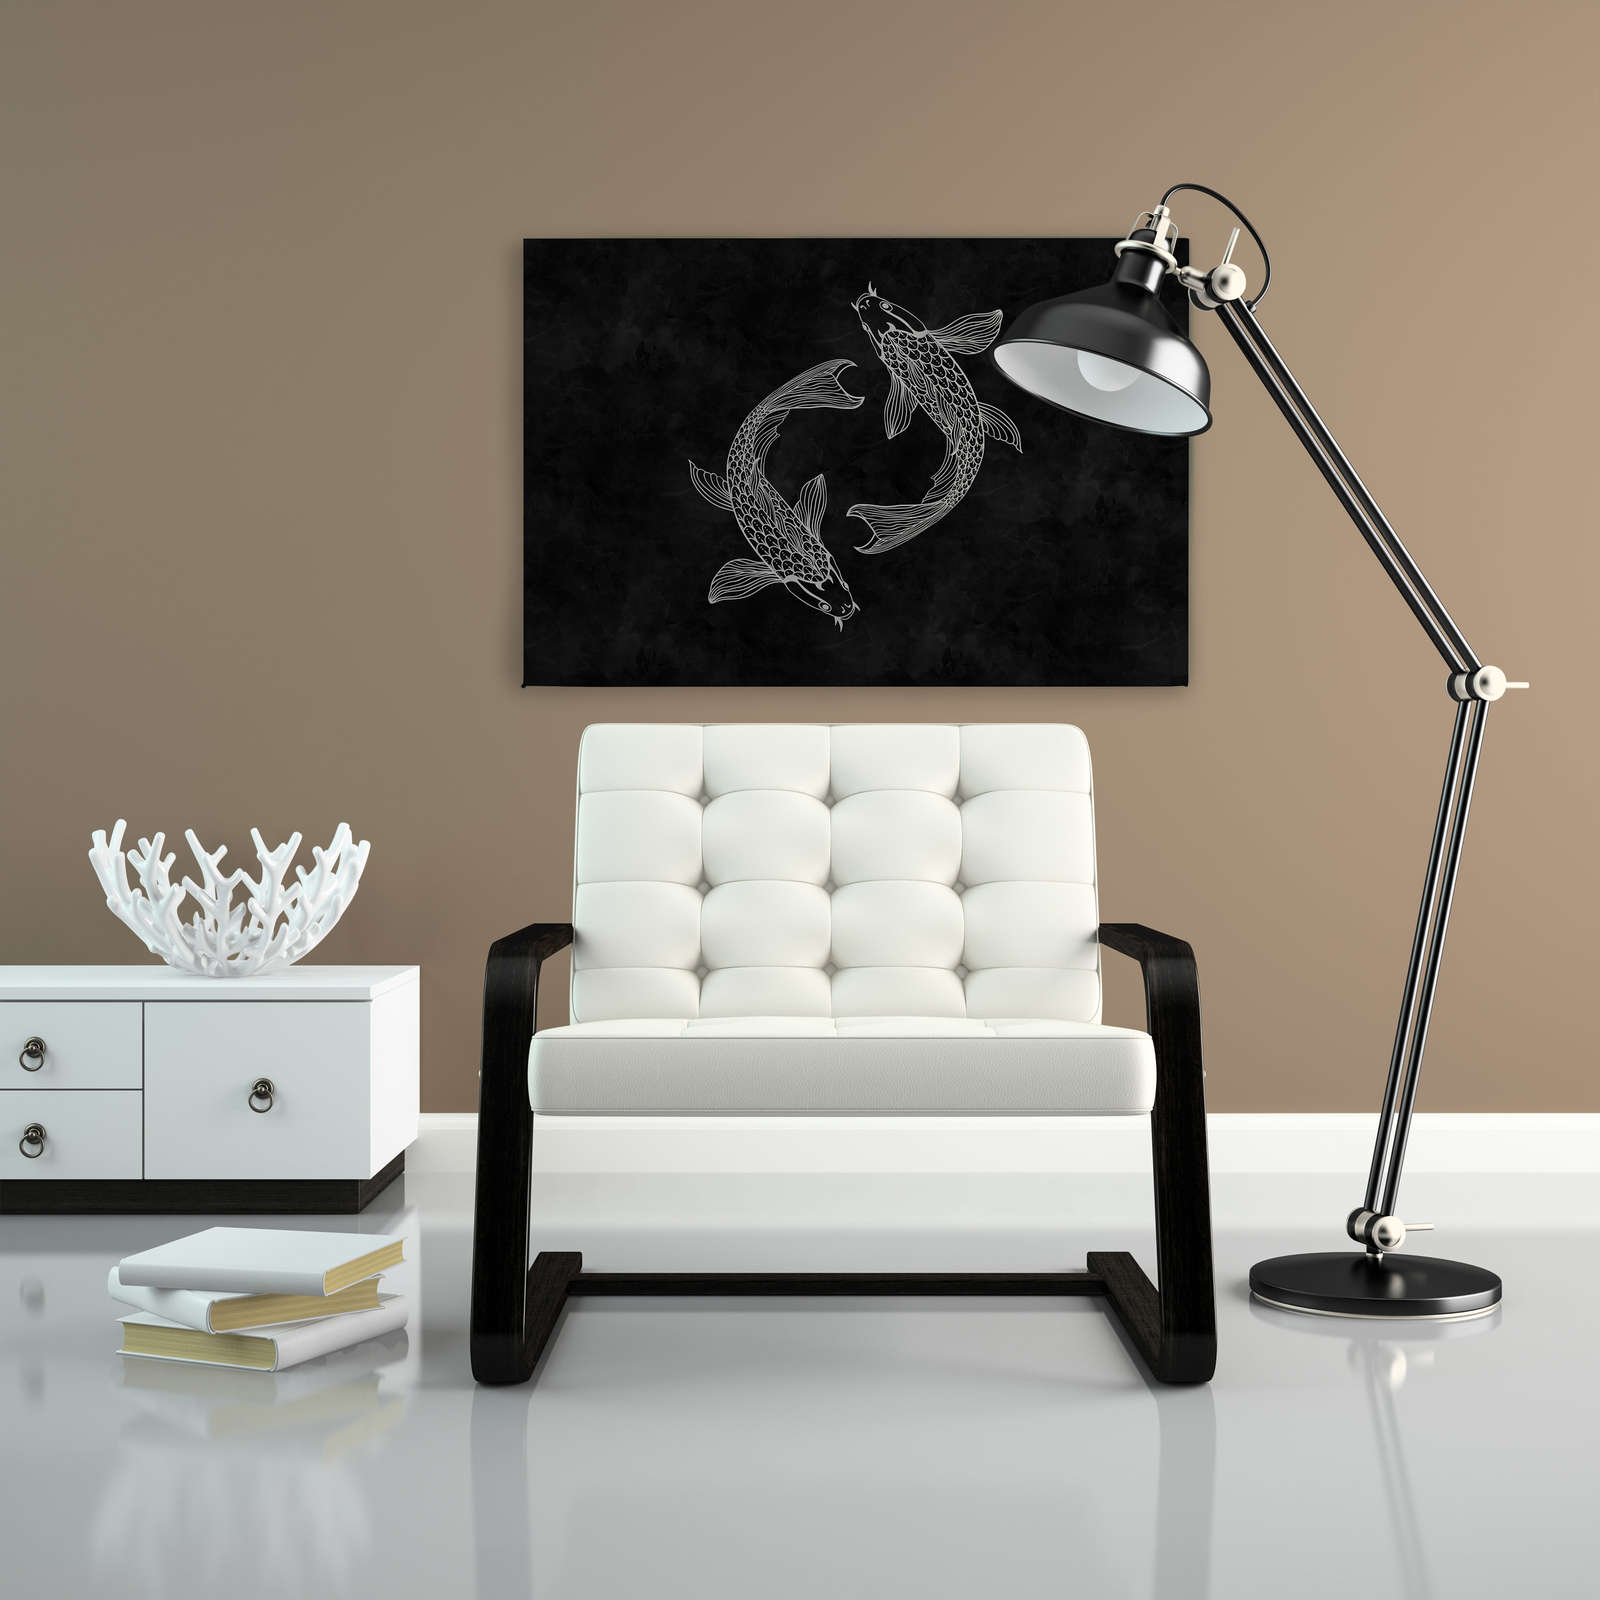             Pittura su tela Koi in bianco e nero con effetto lavagna - 0,90 m x 0,60 m
        